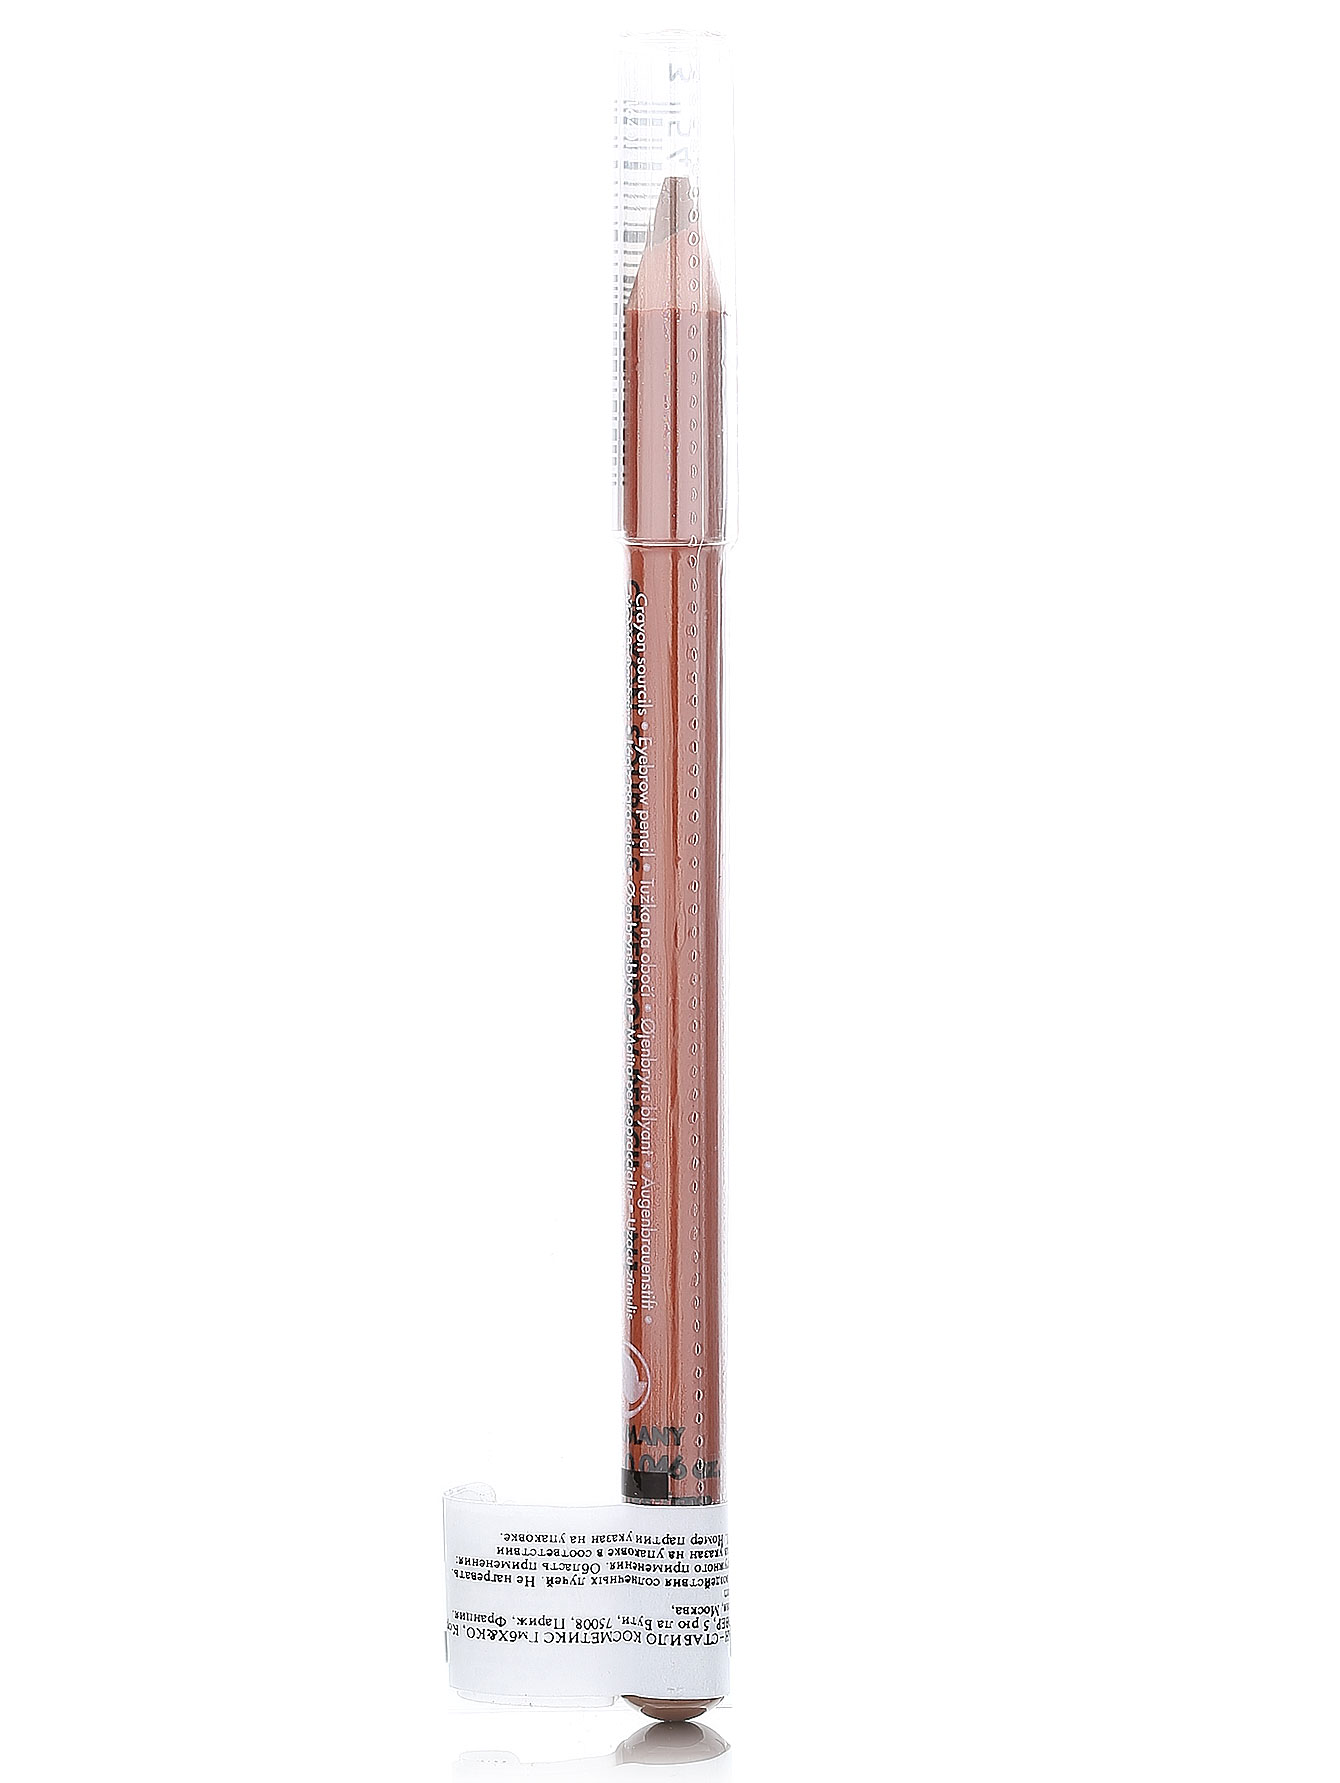  Карандаш для бровей - №1 светлый, Eyebrow Pencil - Модель Верх-Низ